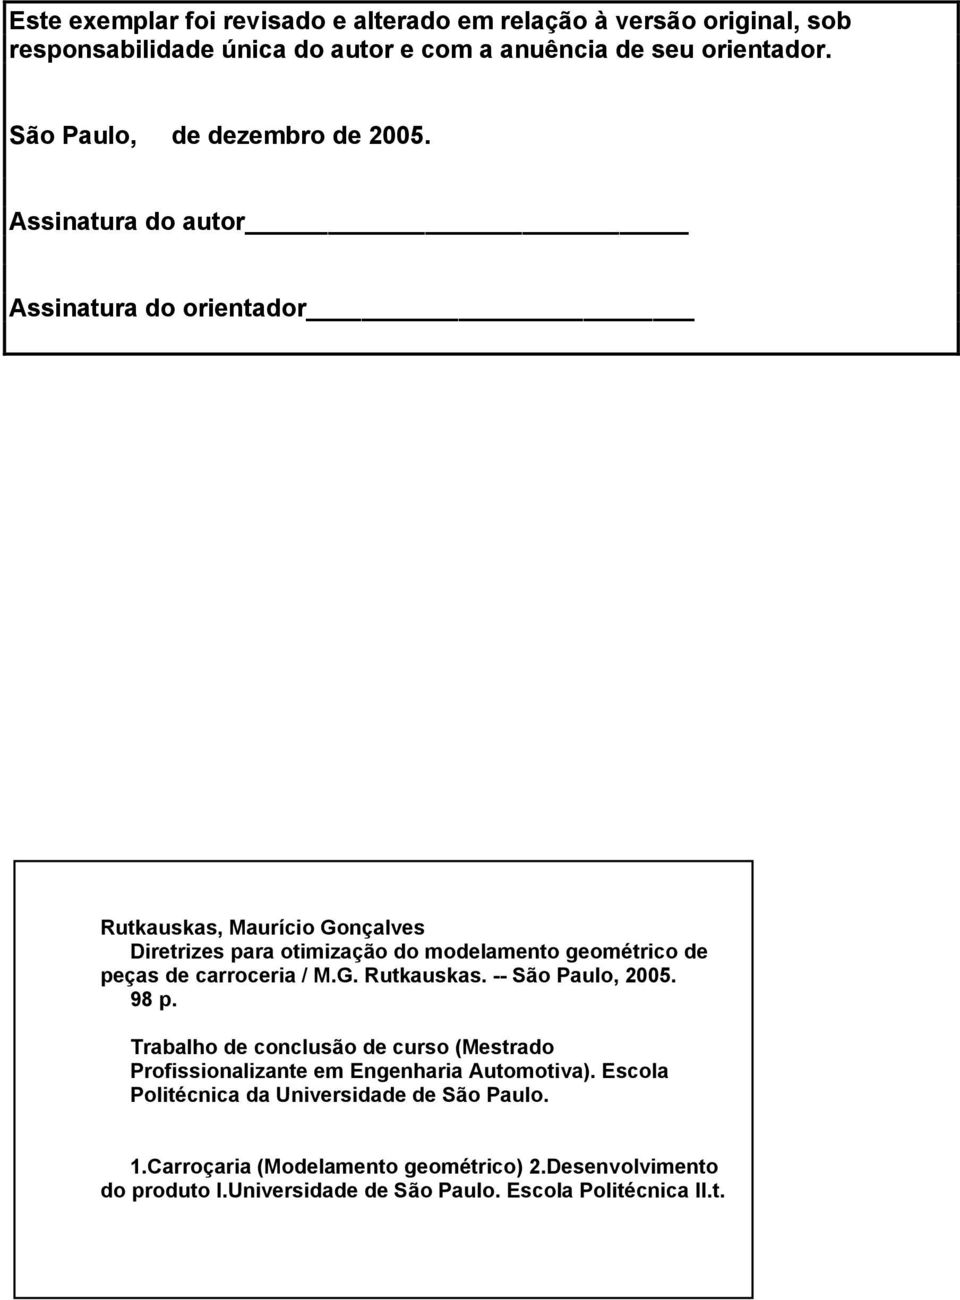 Assinatura do autor Assinatura do orientador Rutkauskas, Maurício Gonçalves Diretrizes para otimização do modelamento geométrico de peças de carroceria / M.G. Rutkauskas. -- São Paulo, 2005.